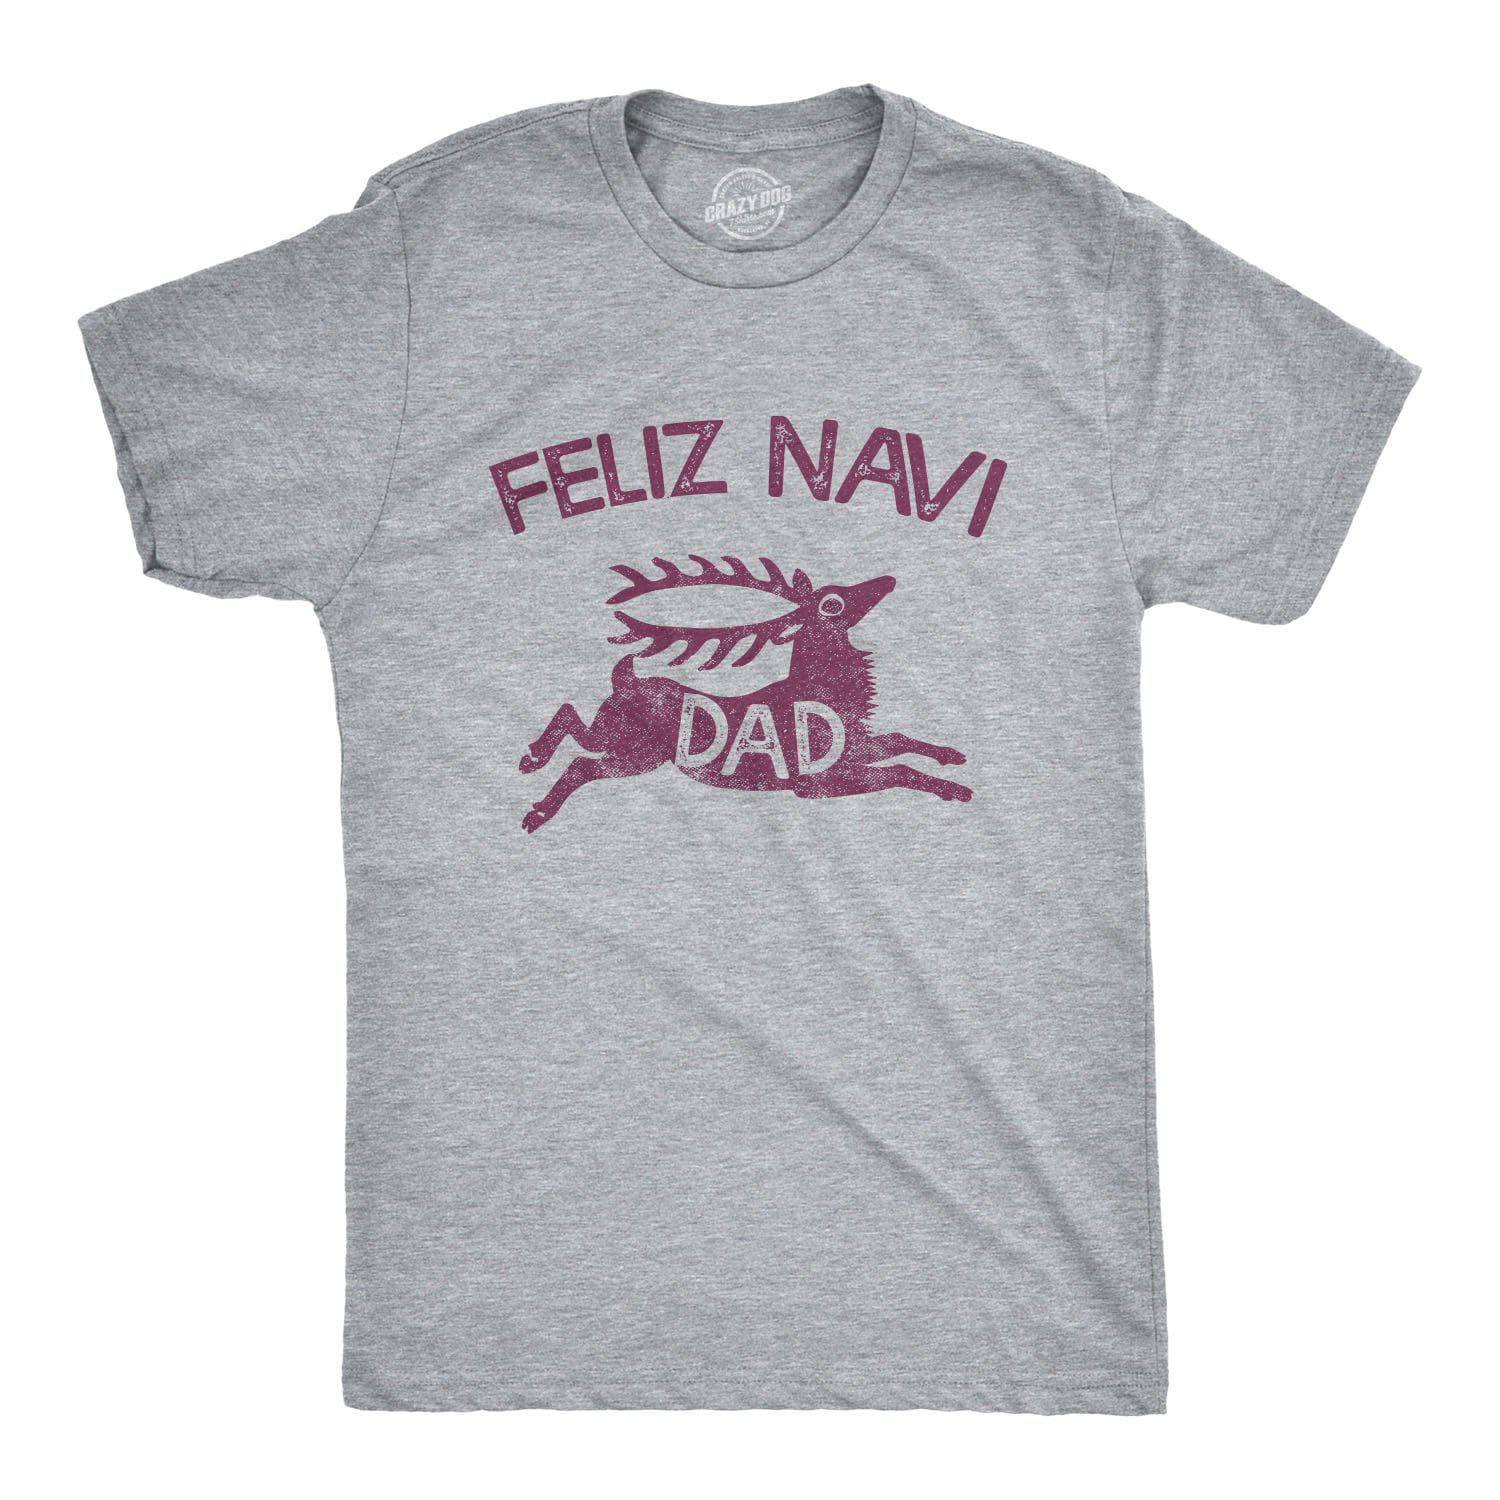 Feliz Navi-dad Men's Tshirt - Crazy Dog T-Shirts